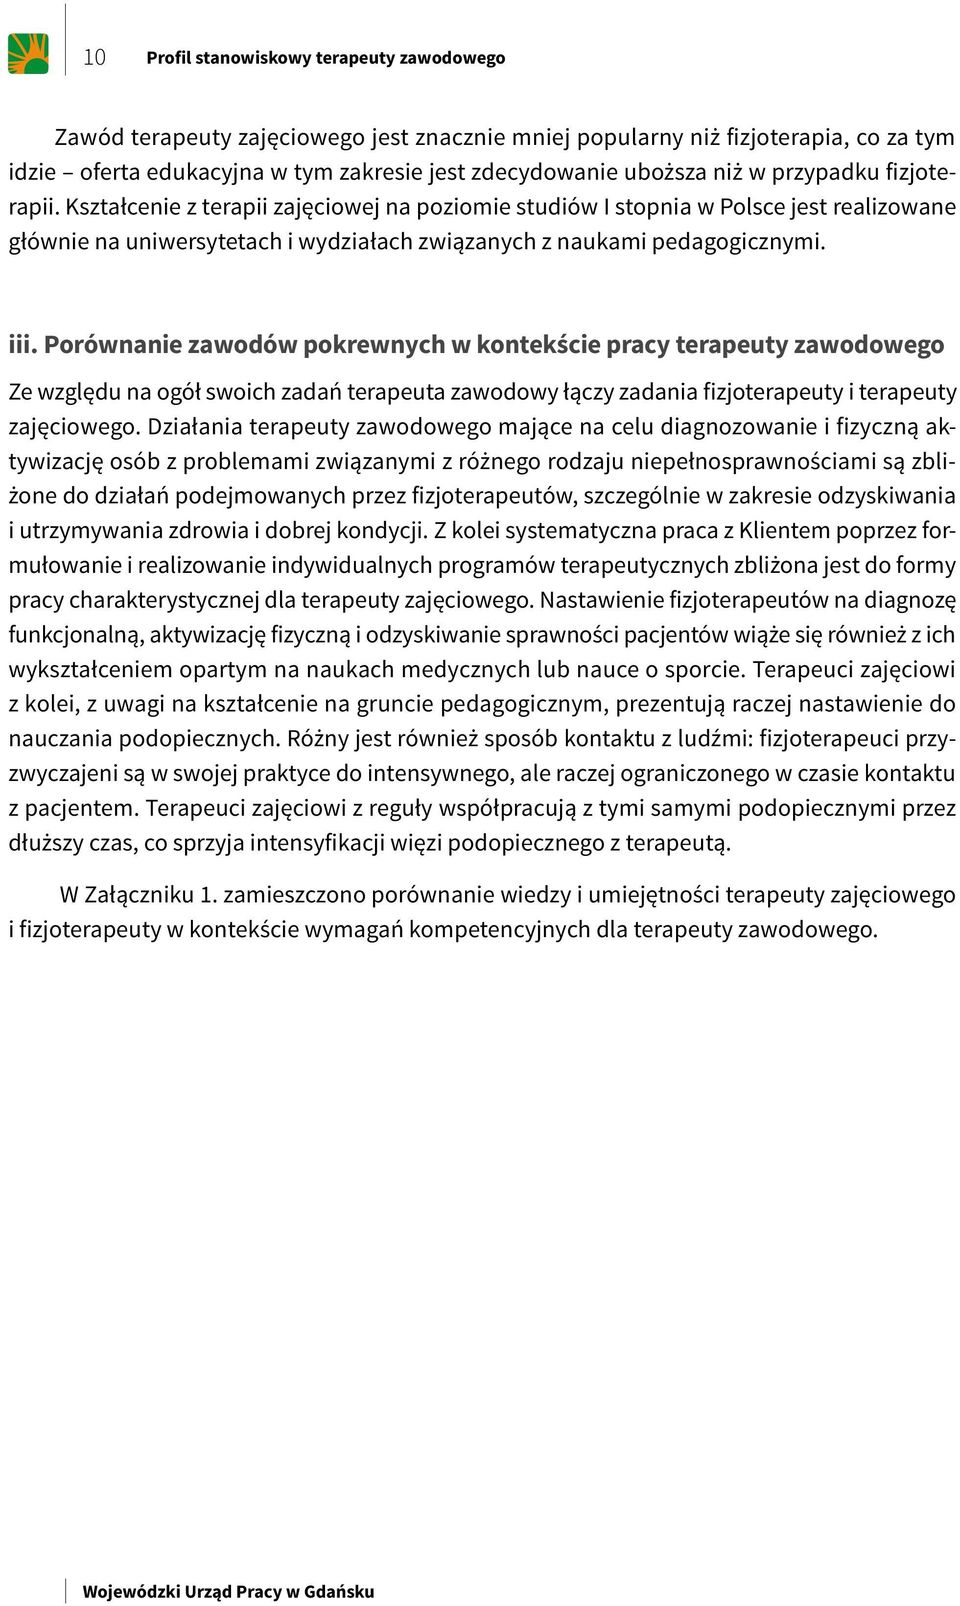 Wojewódzki Urząd Pracy w Gdańsku. Profil stanowiskowy terapeuty zawodowego  - PDF Free Download